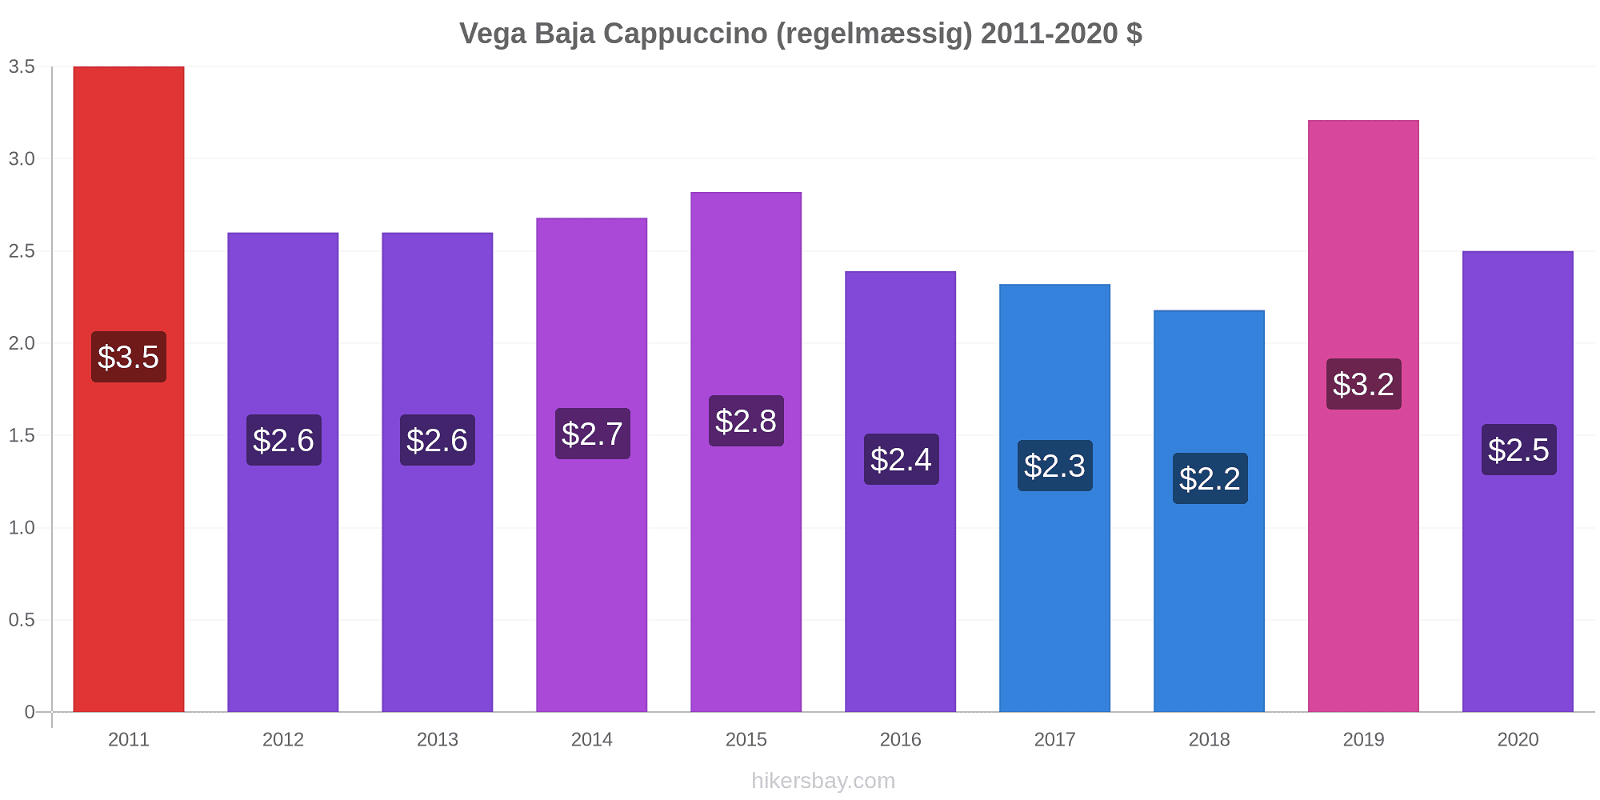 Vega Baja prisændringer Cappuccino (regelmæssig) hikersbay.com